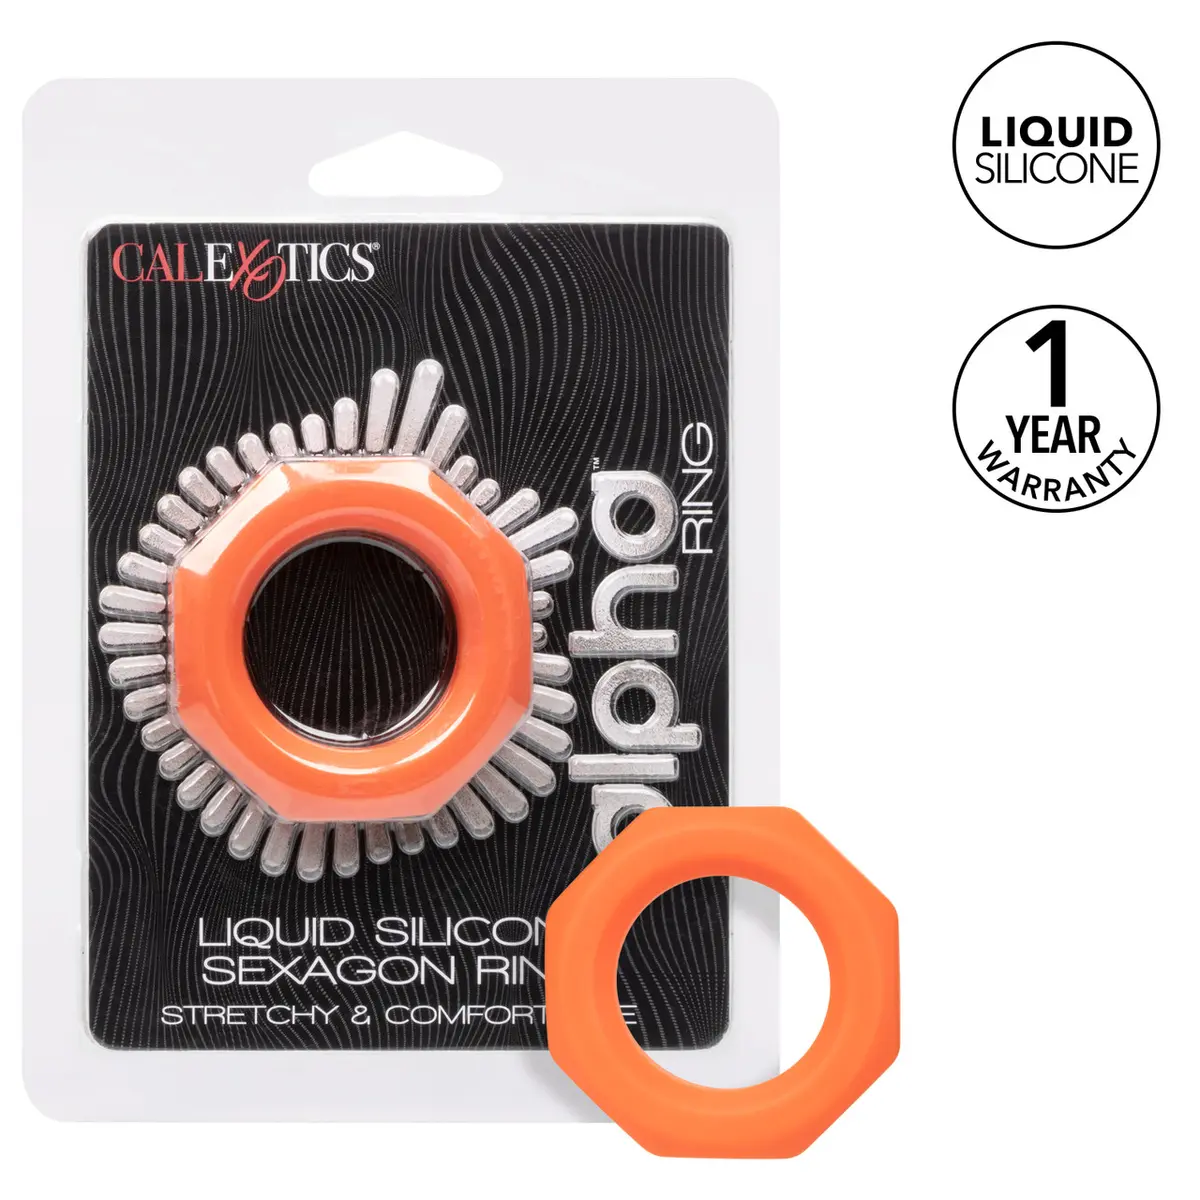 5. Calexotics Alpha Liquid Silicone Sexagon Cock Ring, Orange